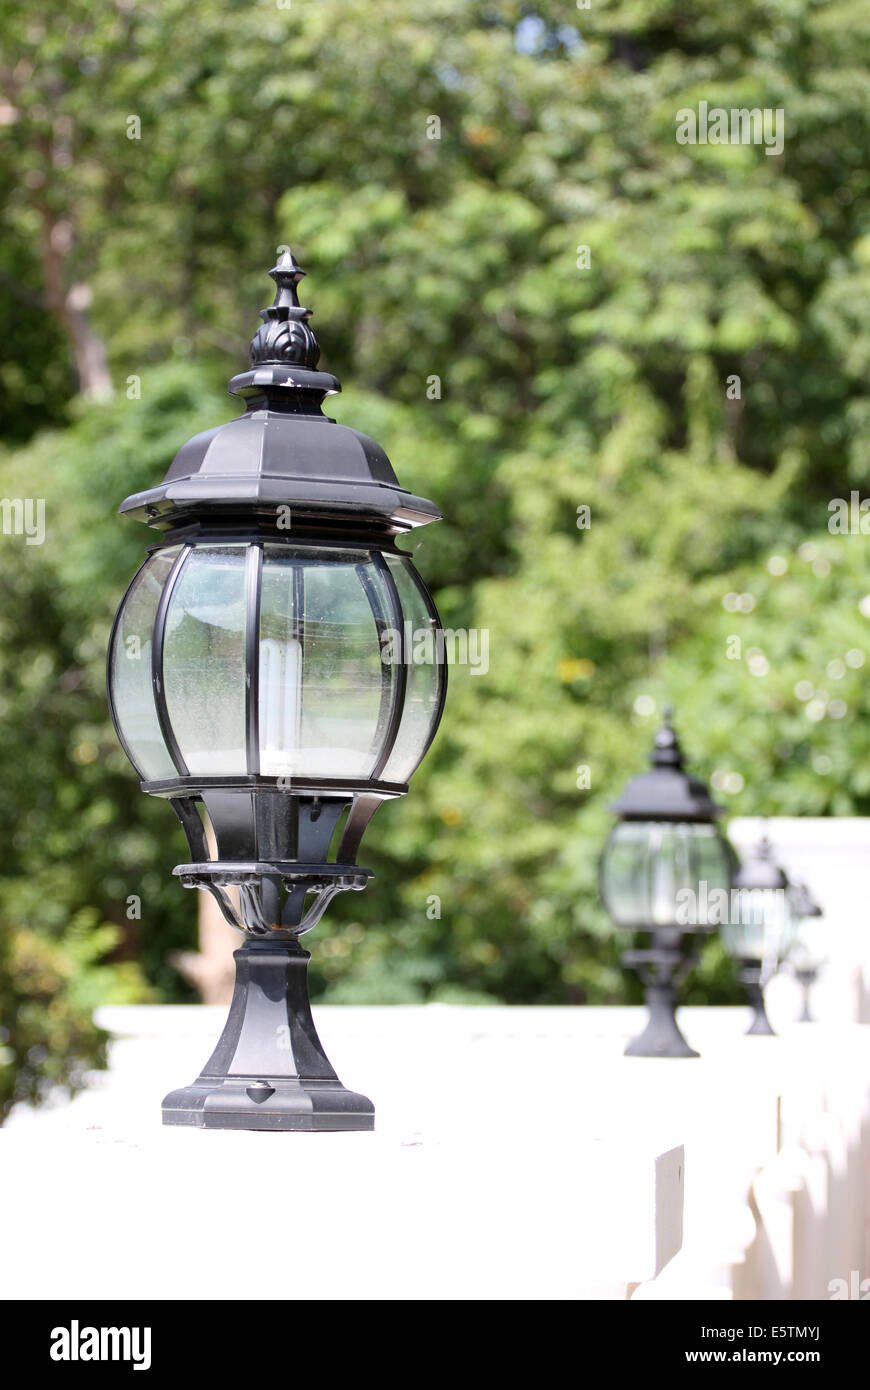 Black lantern to decorate gardens. Stock Photo